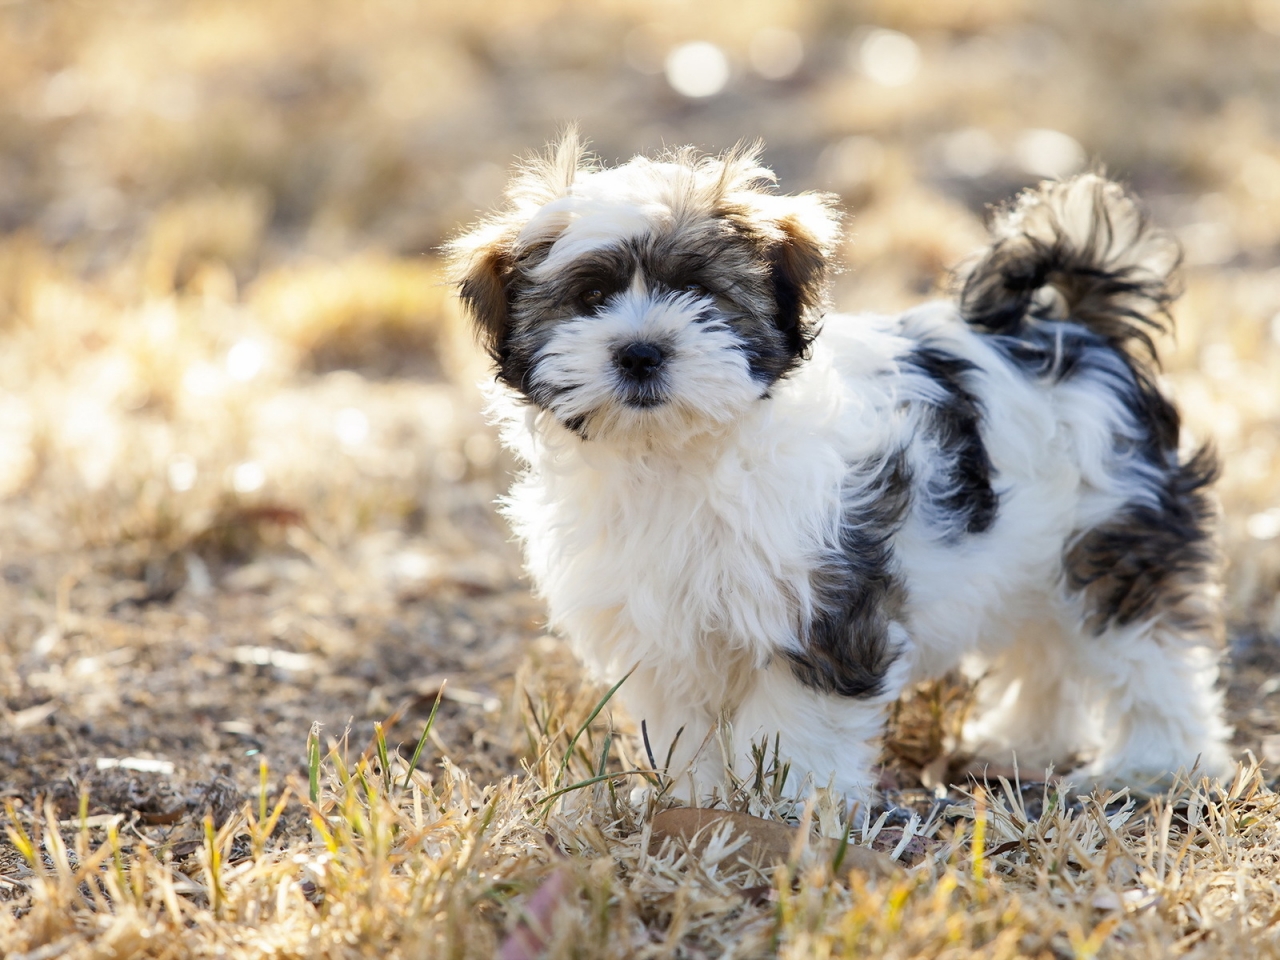 Cute Fluffy Dog for 1280 x 960 resolution